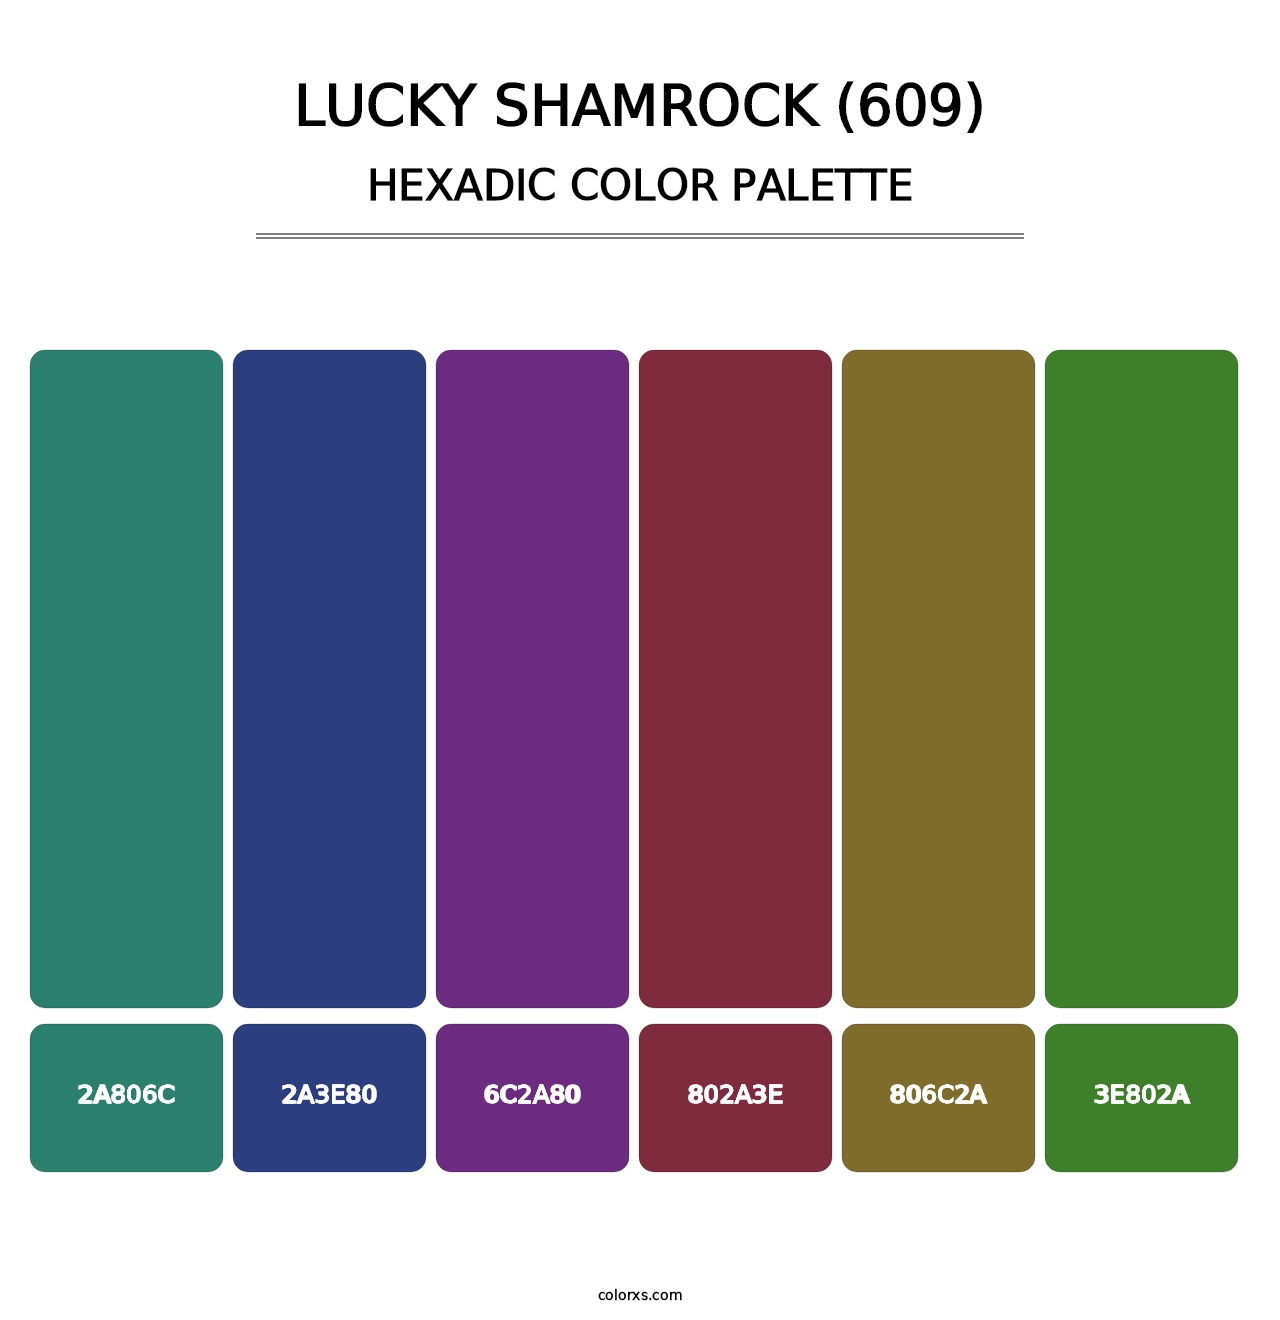 Lucky Shamrock (609) - Hexadic Color Palette